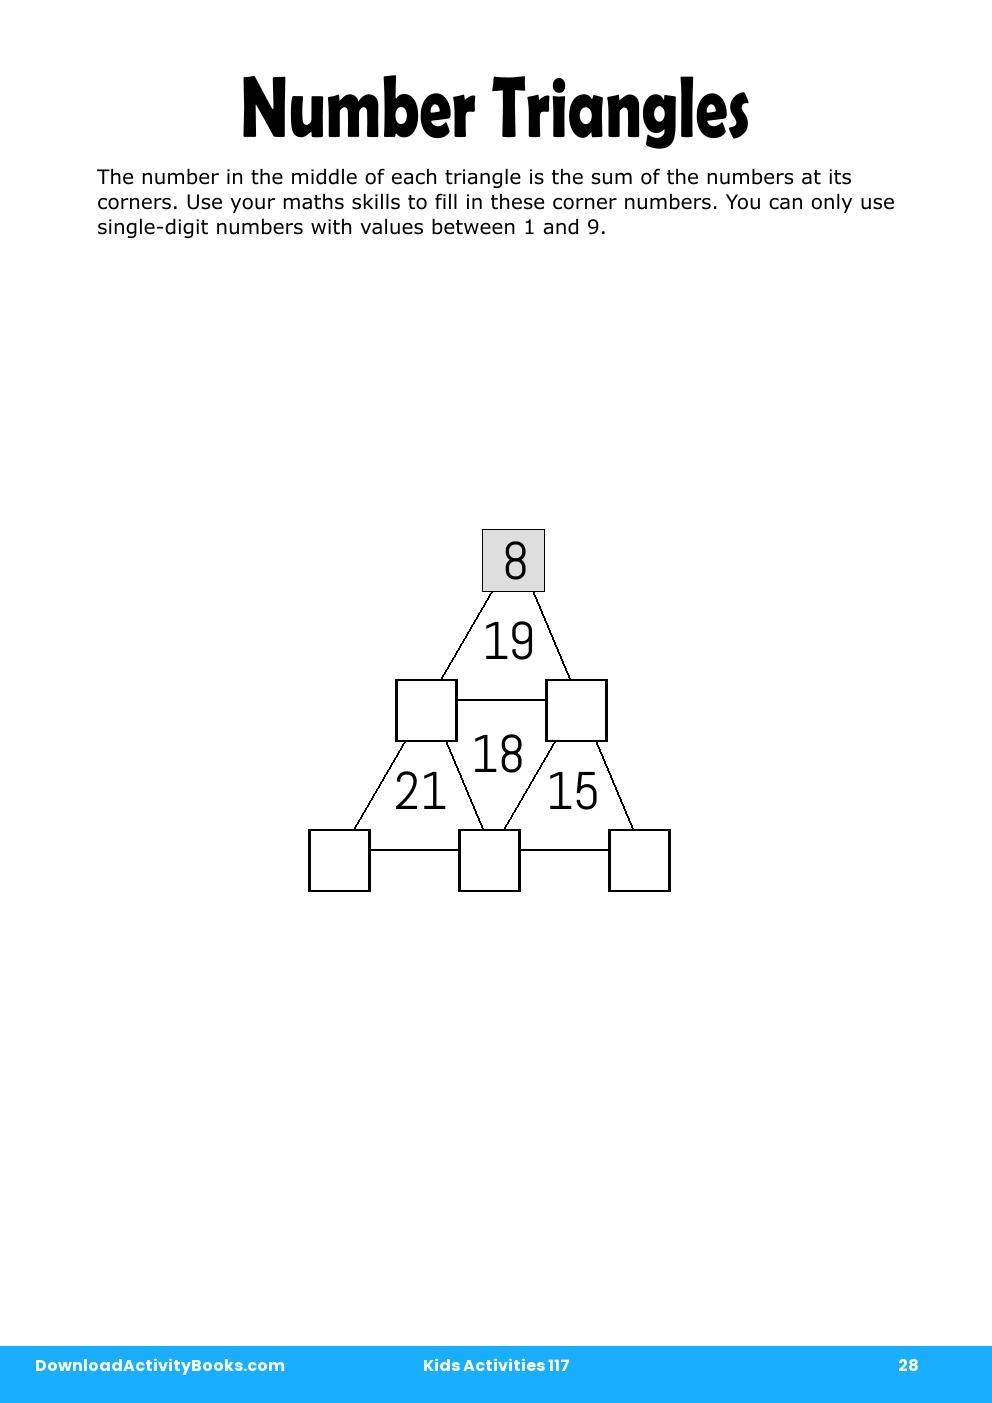 Number Triangles in Kids Activities 117